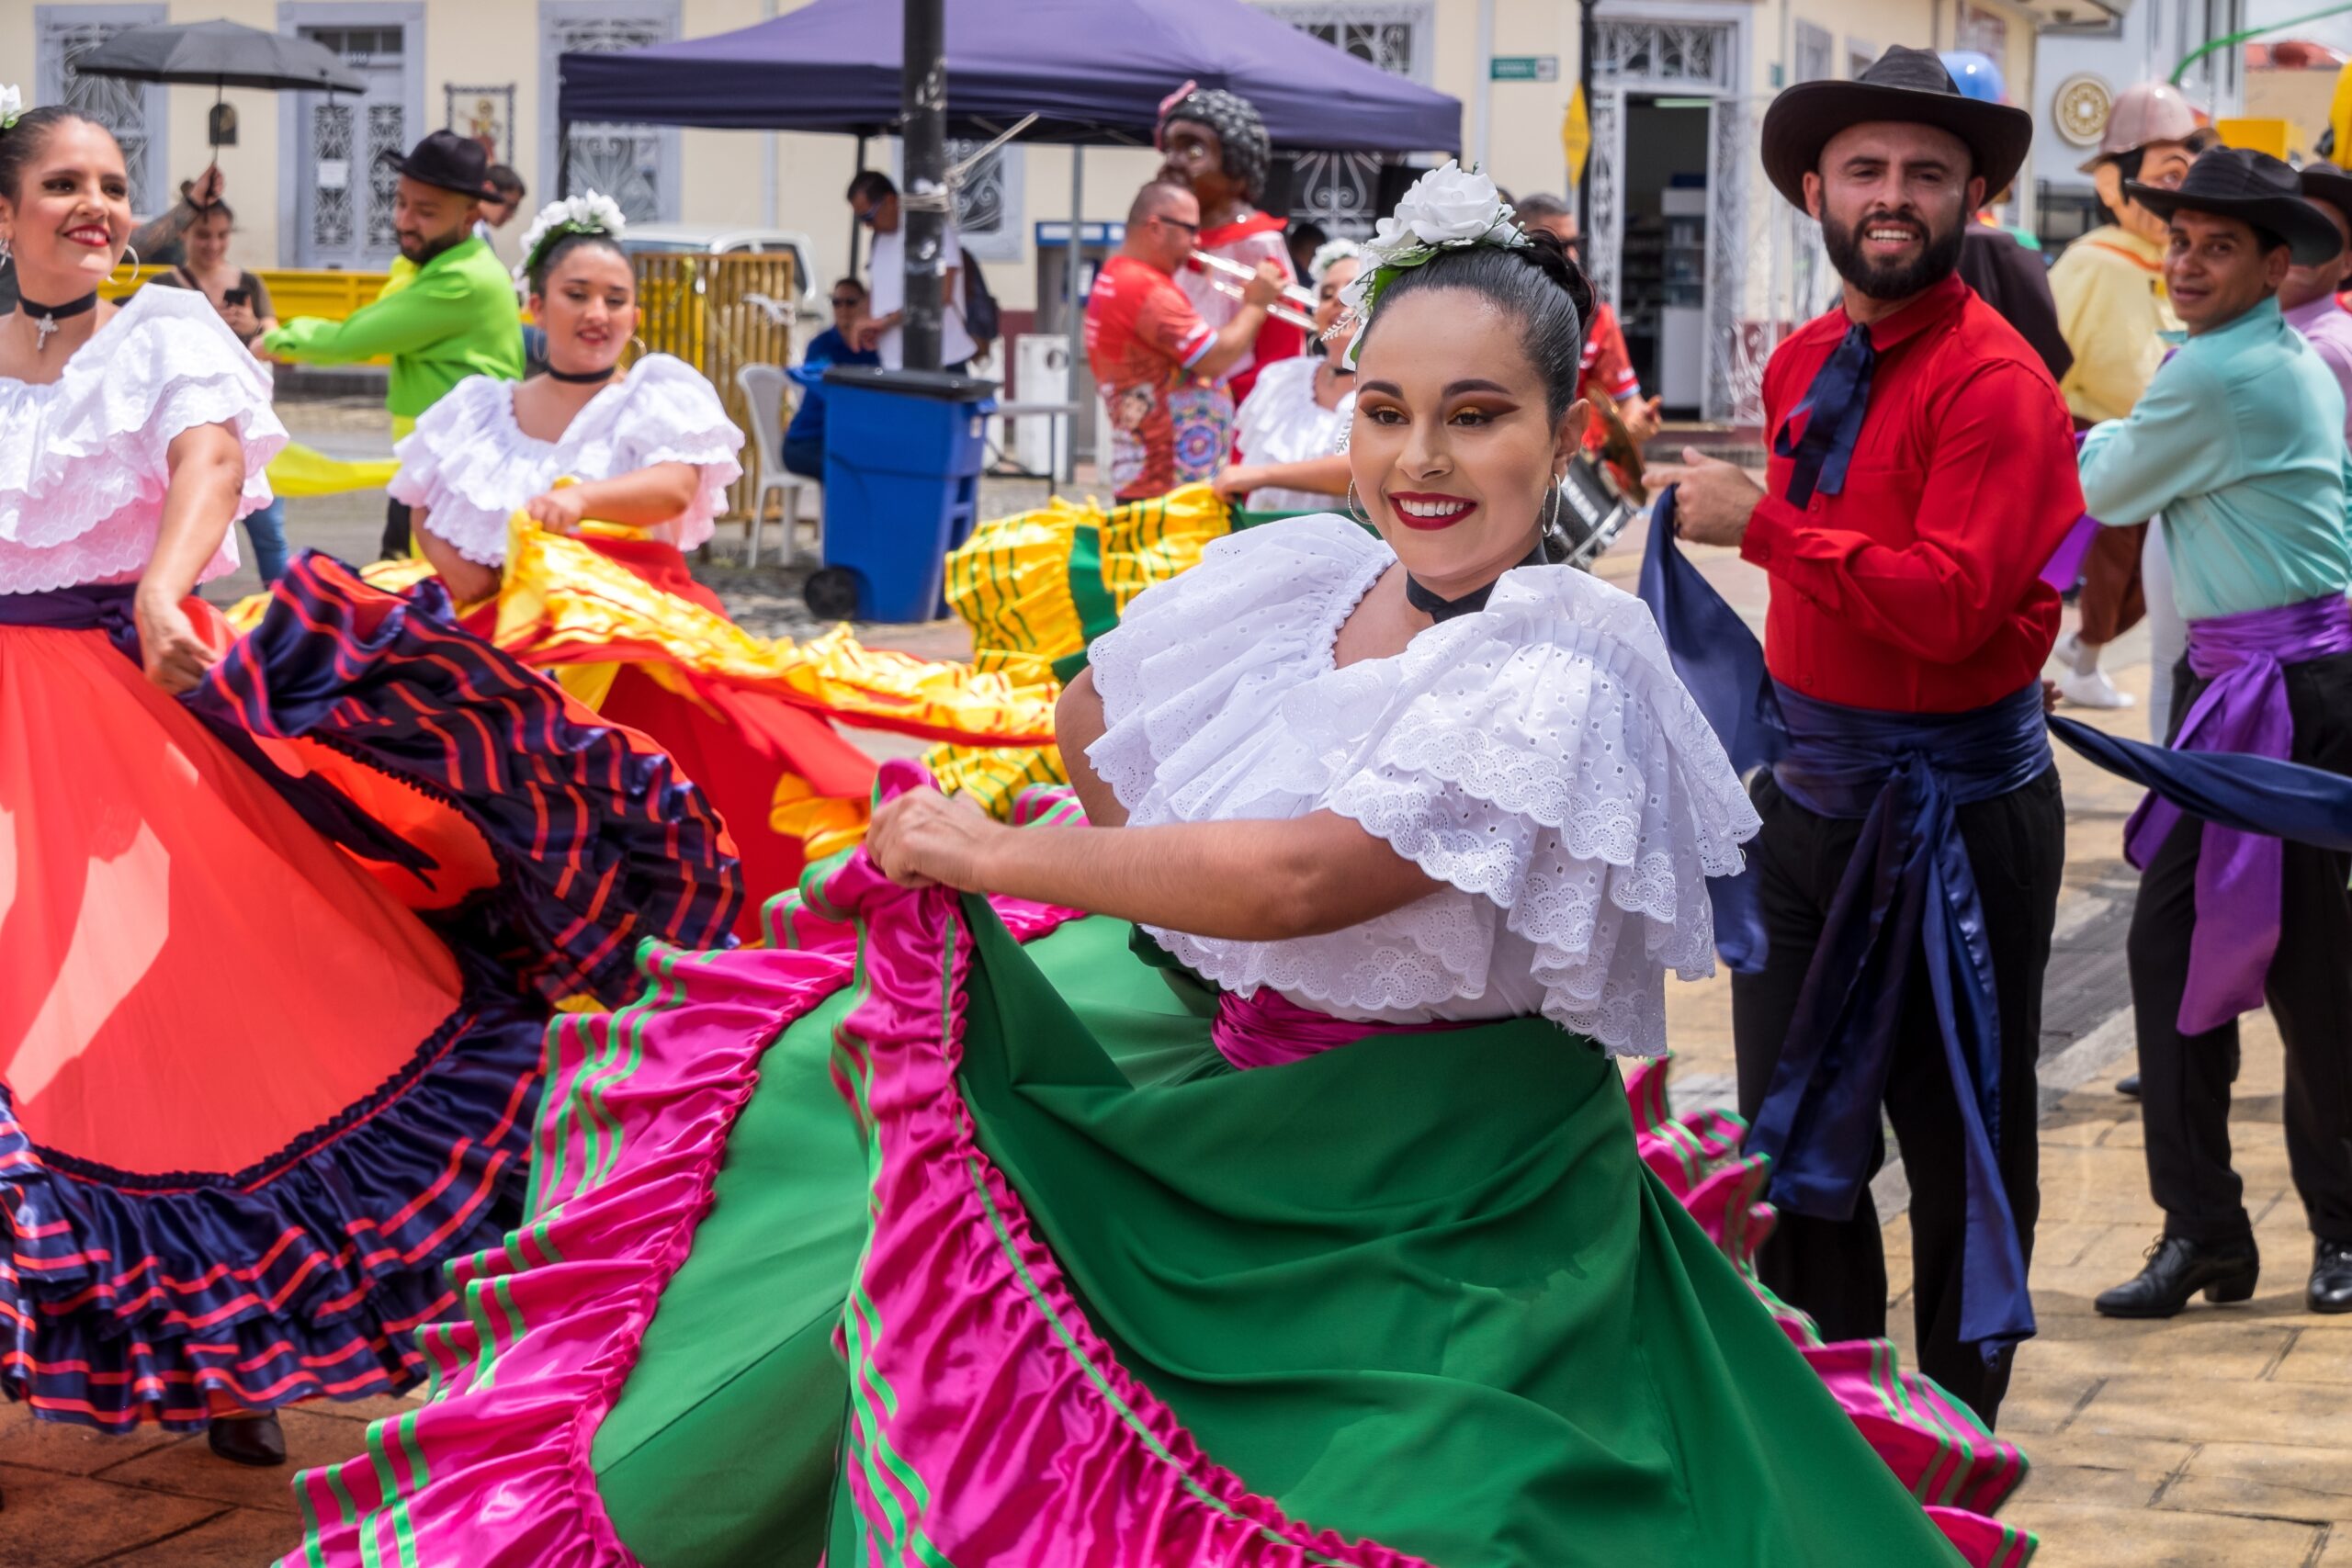 Costa Rican folk group parading through San Jose. (Photo Credit: Salvador Aznar / Shutterstock)